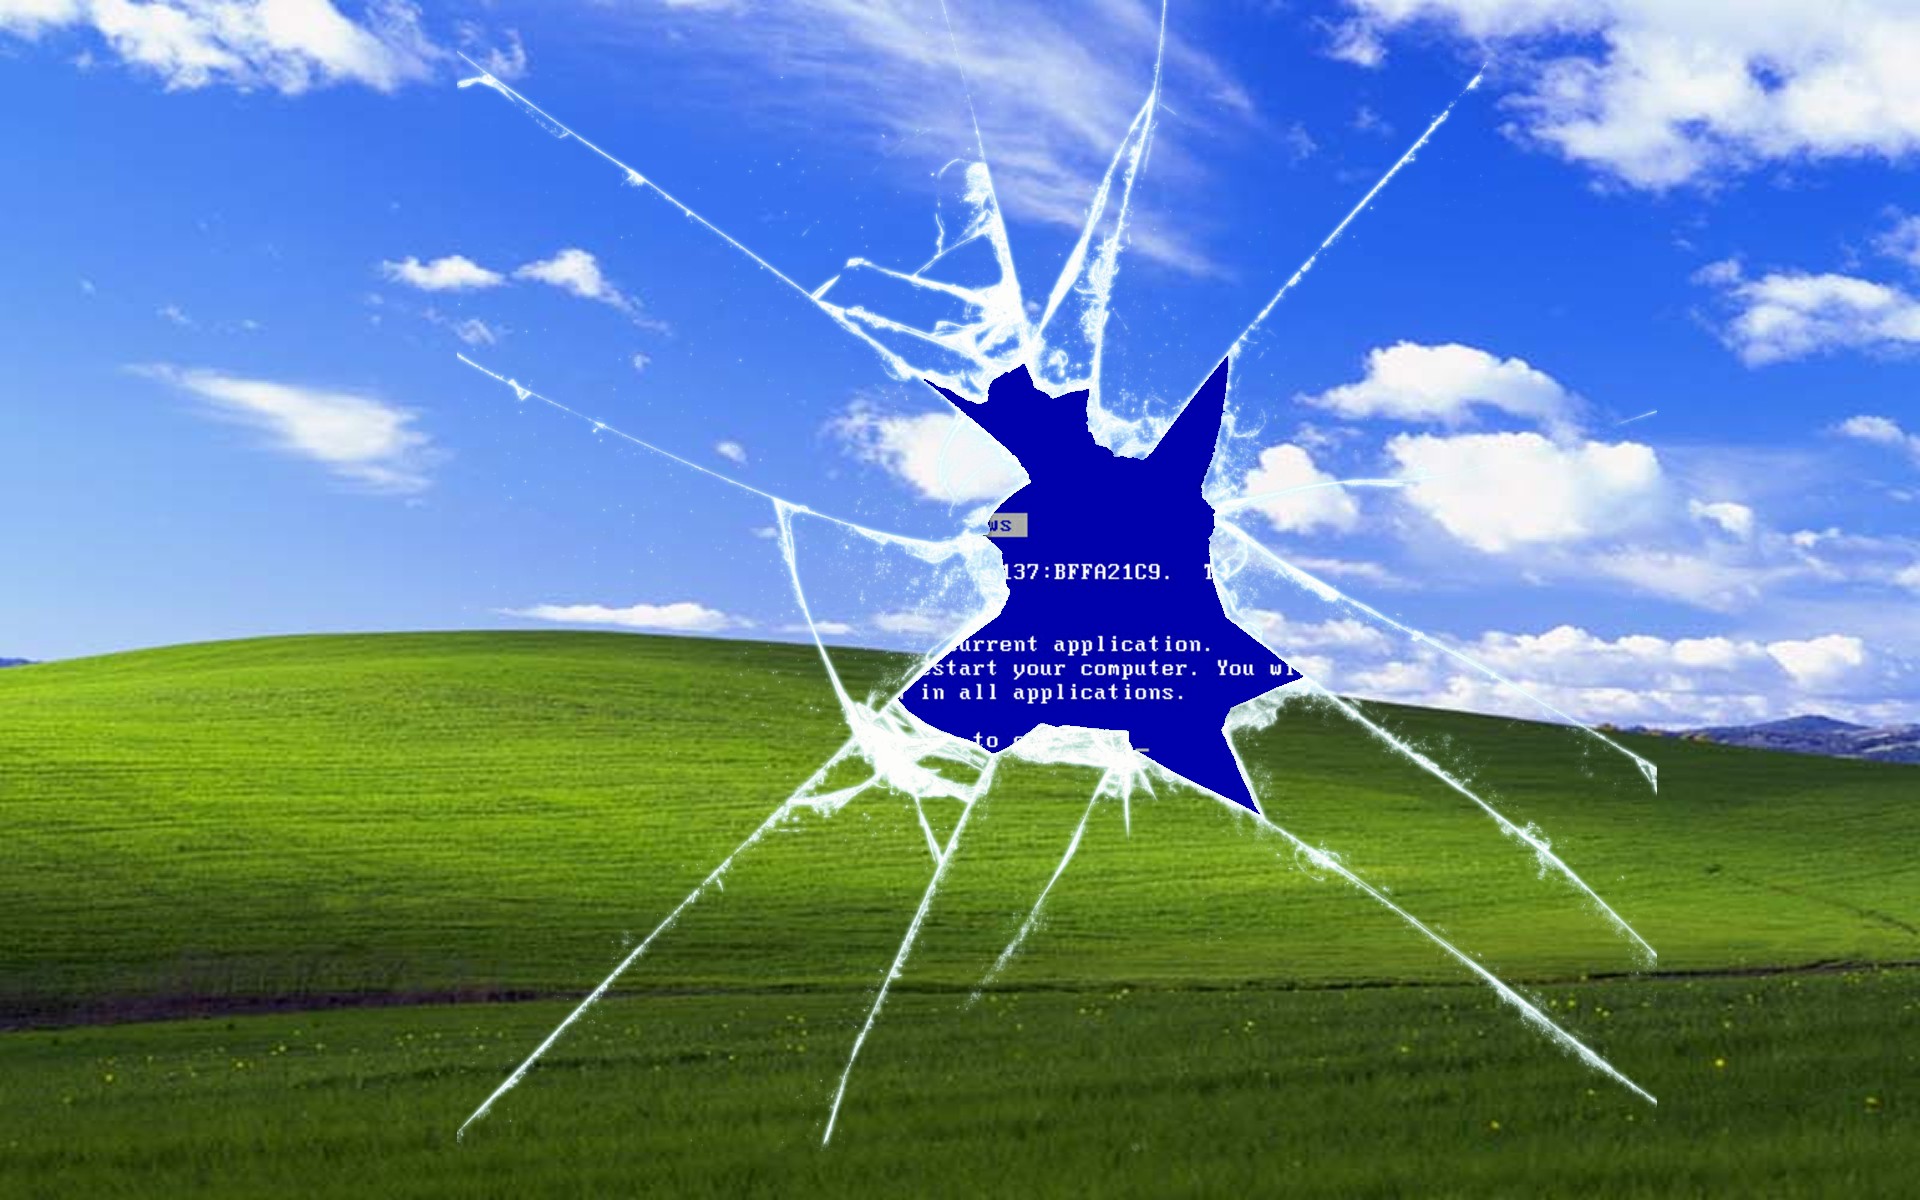 Windows XP Is Still Running On A Tenth Of All Desktops